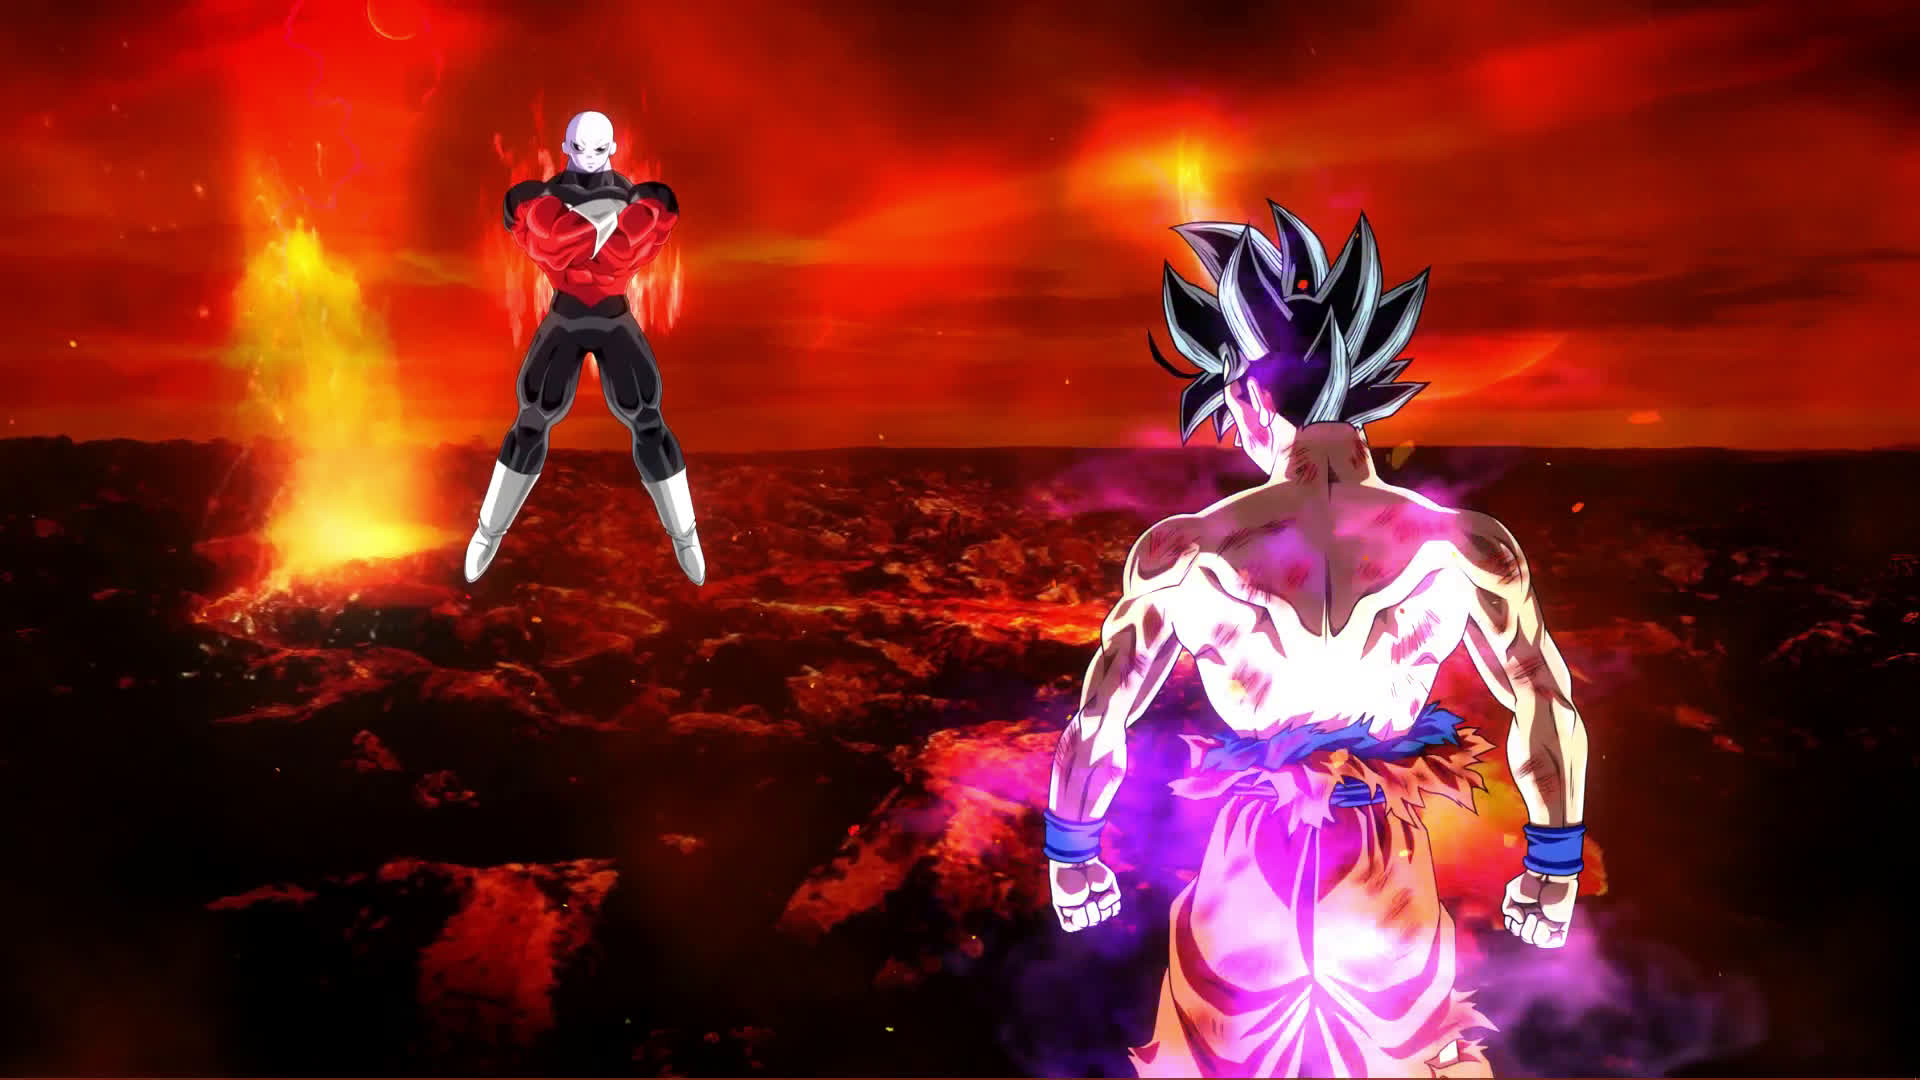 Goku vs Jiren wallpaper by ruxtart  Download on ZEDGE  647c